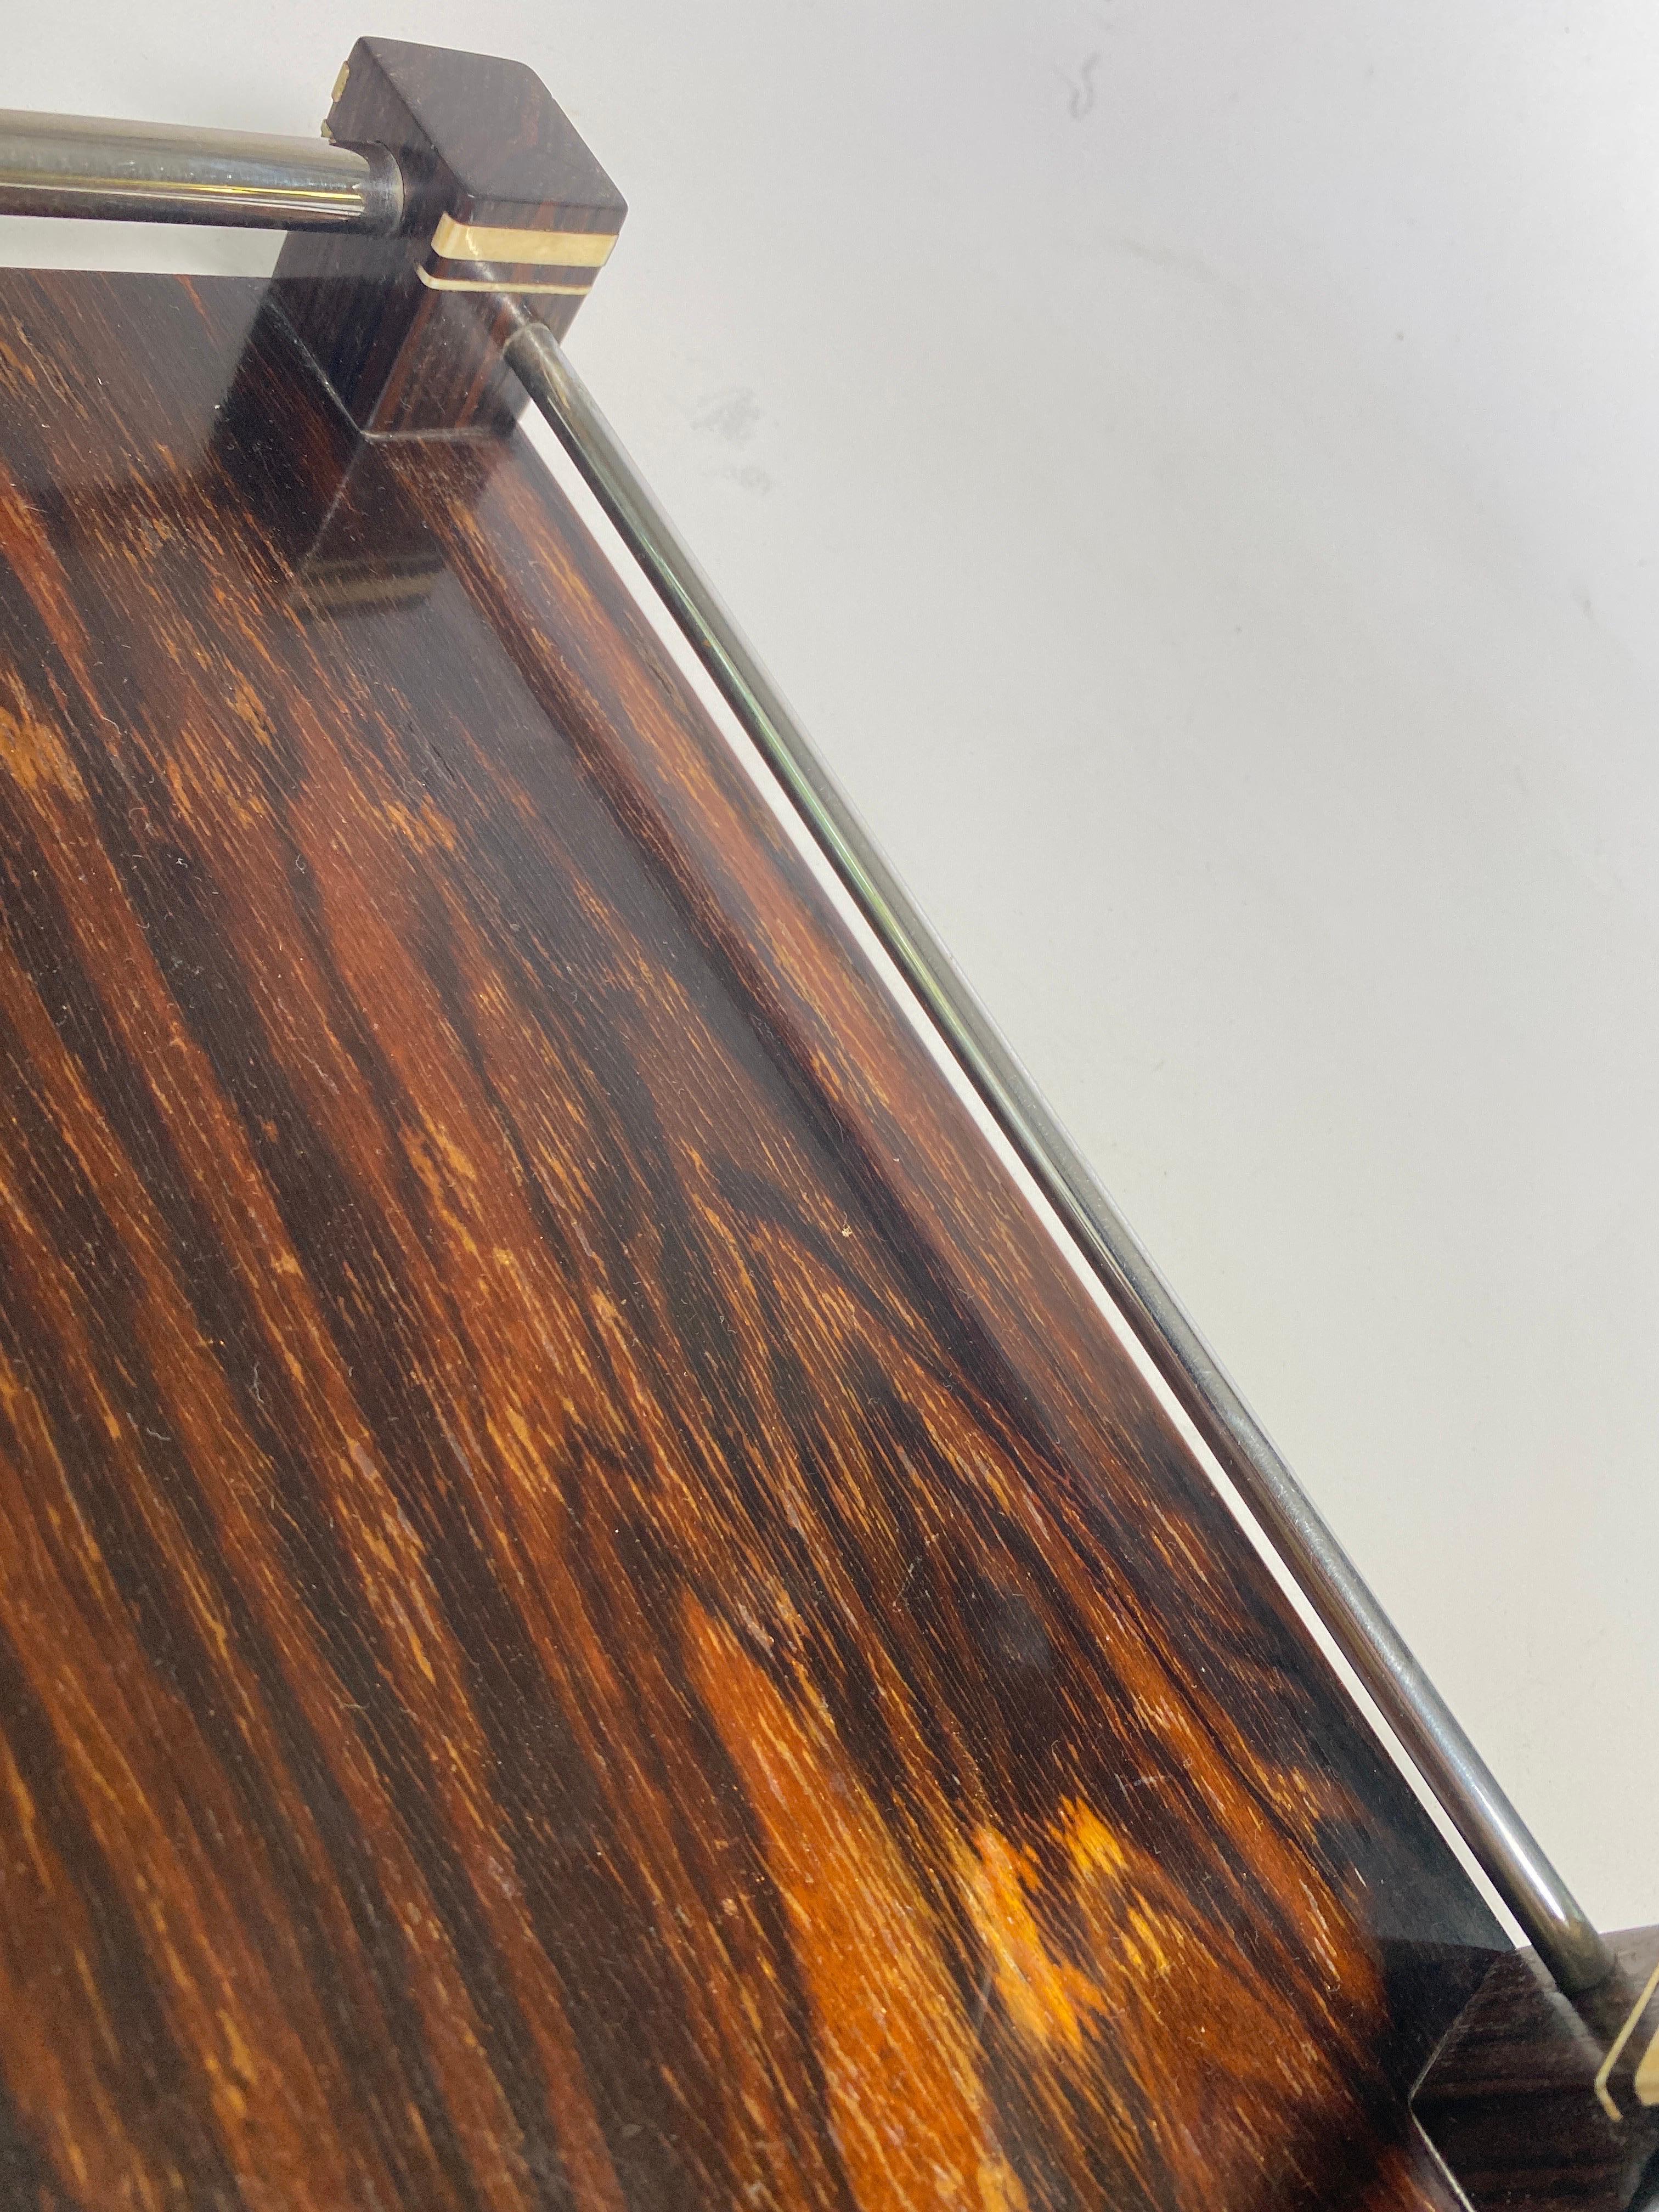 Diese Platte ist typisch für die Periode und den Stil des Art Deco und von hoher Qualität.
Das edle Holz und die Dekoration verleihen einen luxuriösen Eindruck.
Es wurde in Frankreich in den 1940er Jahren hergestellt und ist in einer braunen und